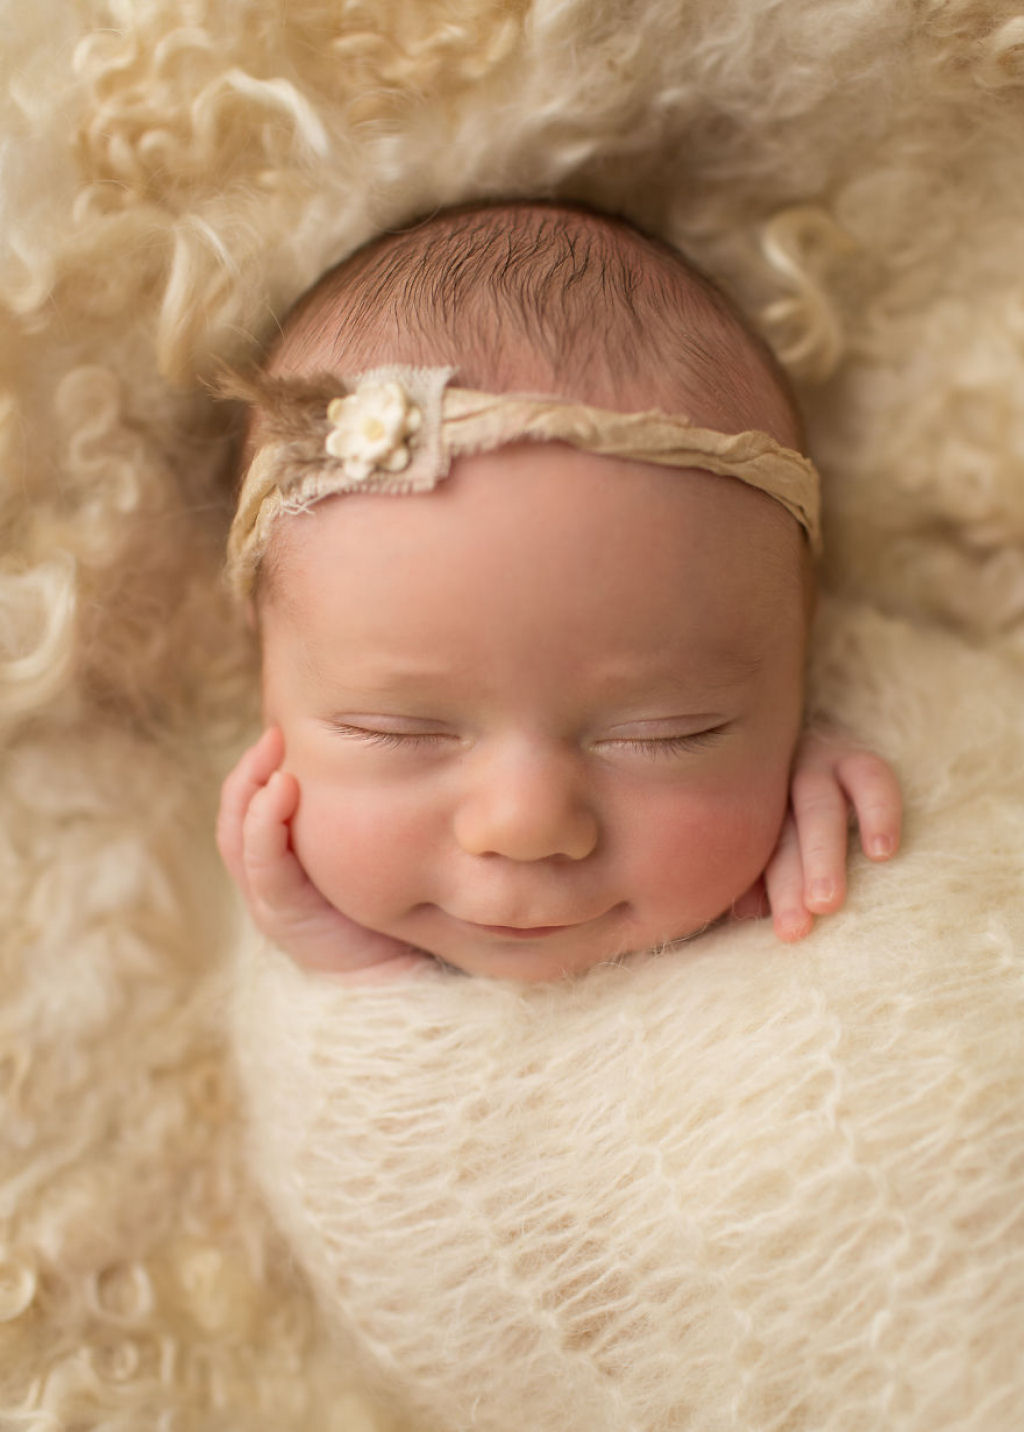 Fotgrafa britnica cria retratos insuportavelmente ternos de bebs dormindo 03